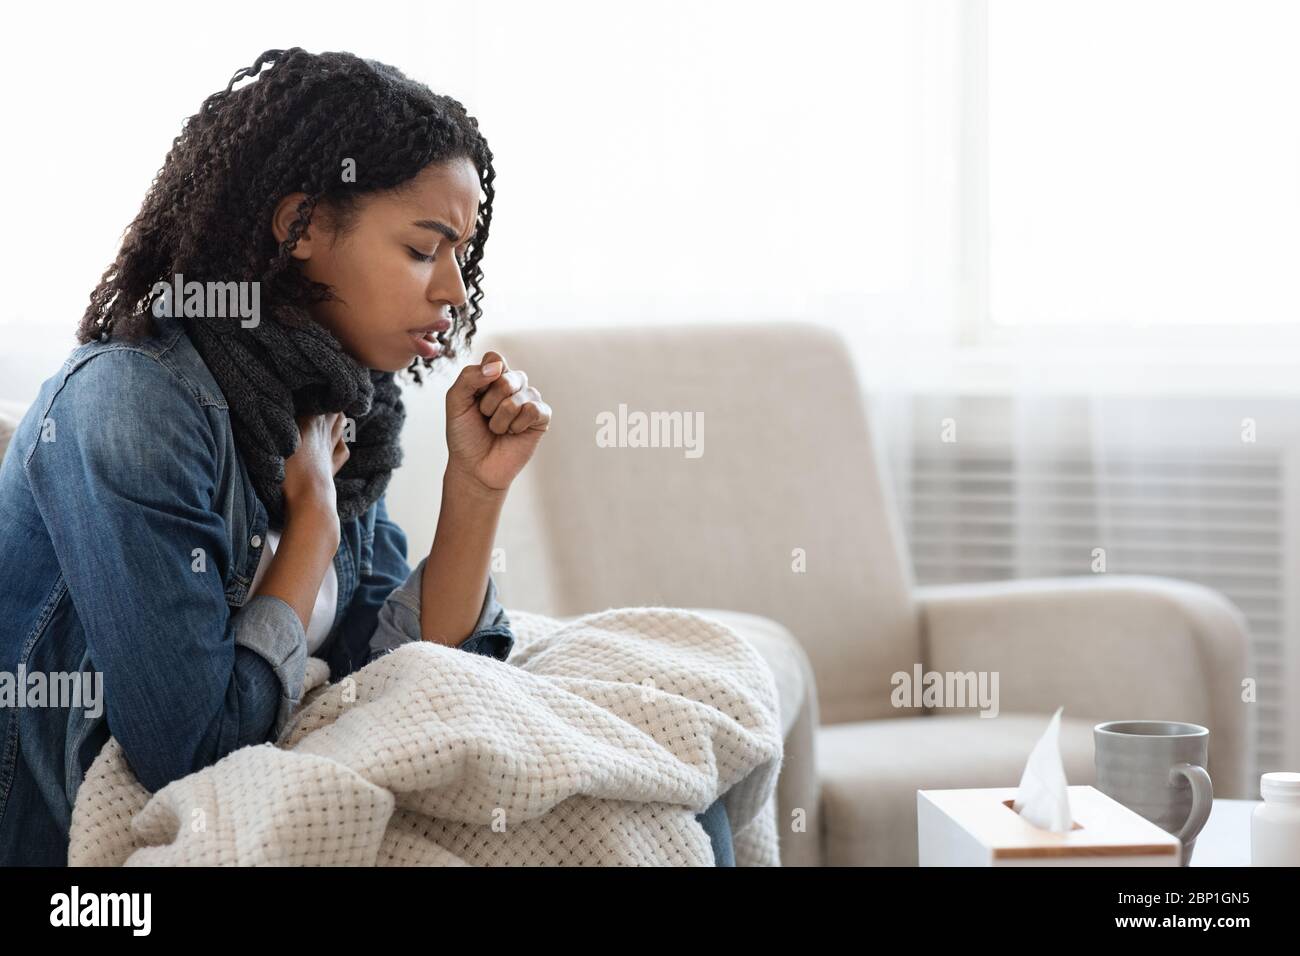 Riesgo de coronavirus. Mujer negra enferma tosiendo fuerte en casa Foto de stock